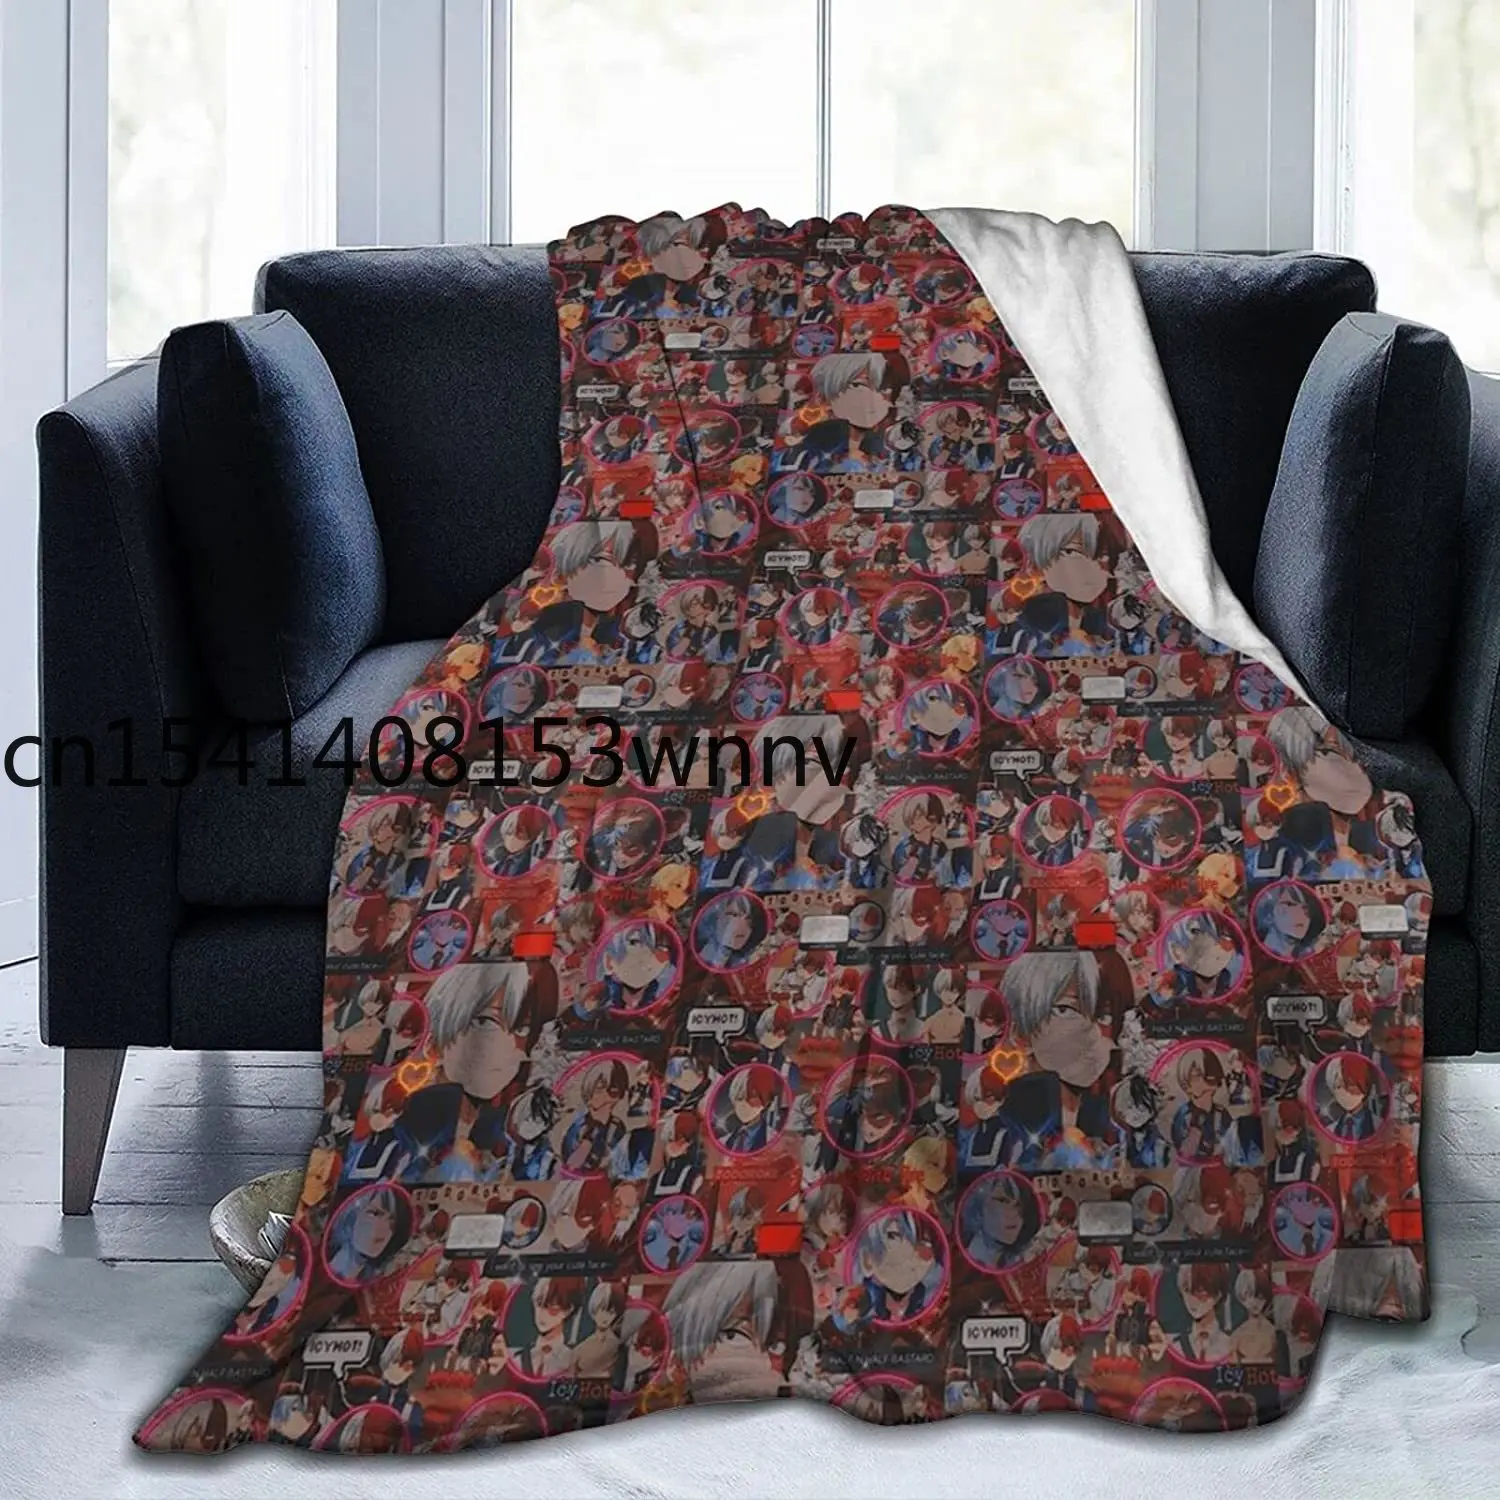 

Мягкое фланелевое одеяло с коллажем в стиле аниме, легкое Флисовое одеяло, кондиционер для спальни